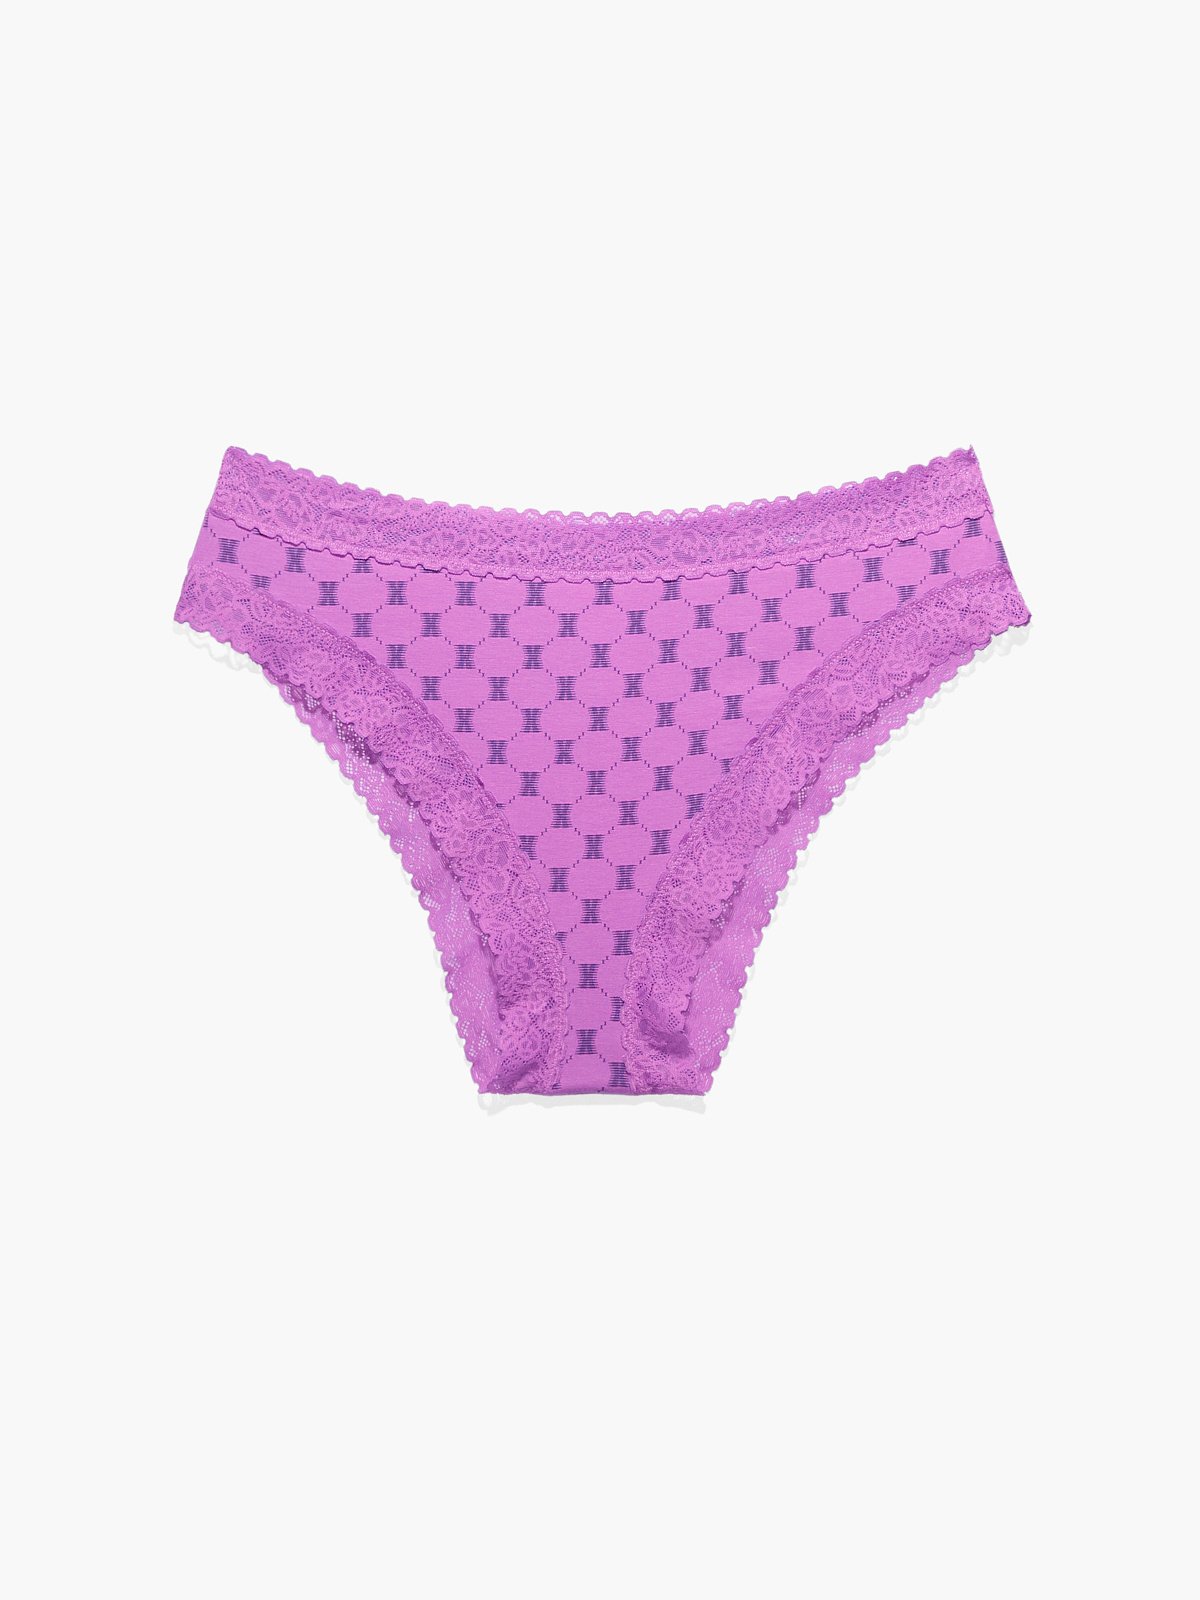 QTBIUQ Women Cutut Lace Underwear Briefs Panties FloralHollow Out Lingerie  Underpants(Purple,M)